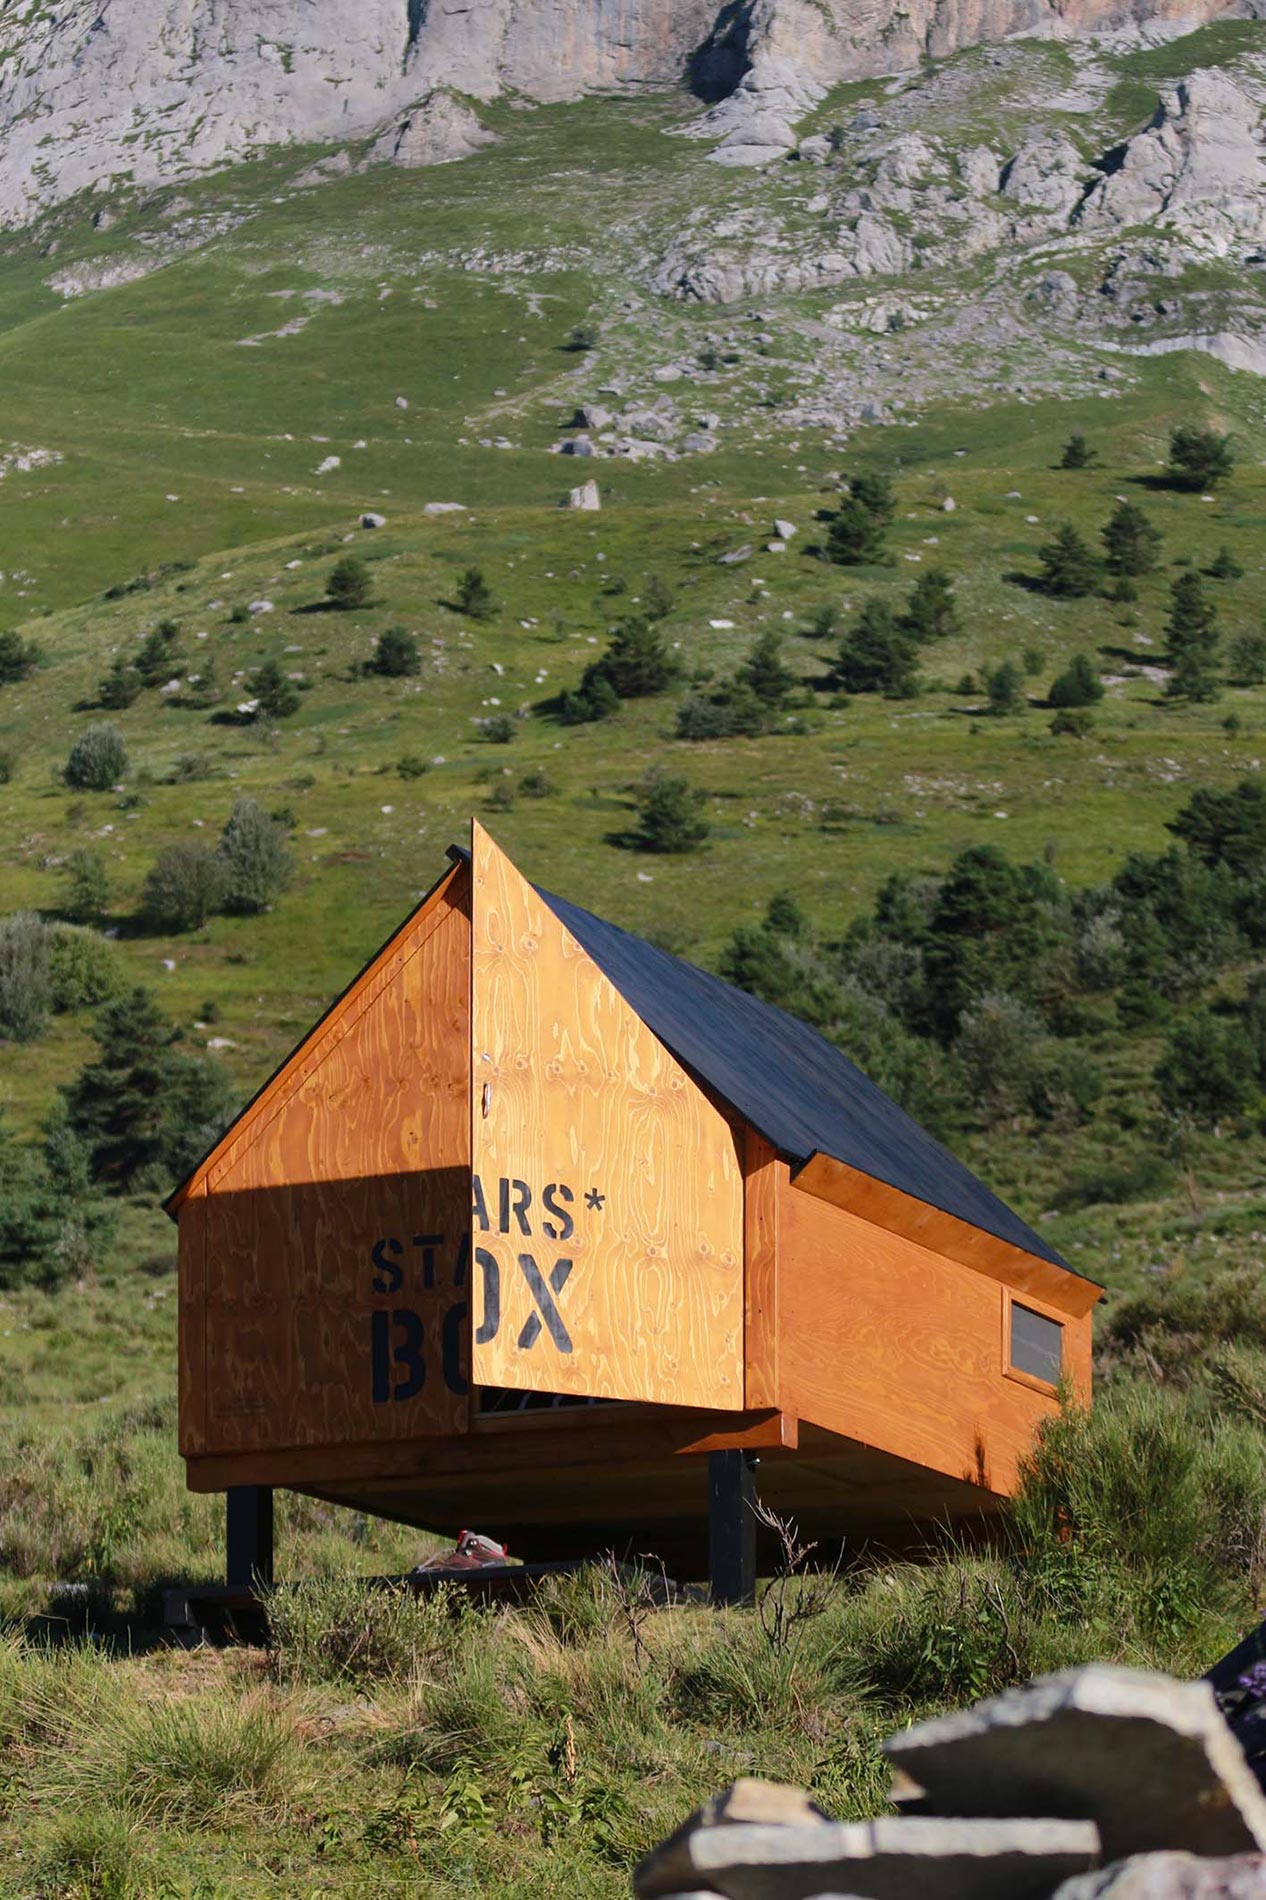 starsbox capsule hotel in montagna